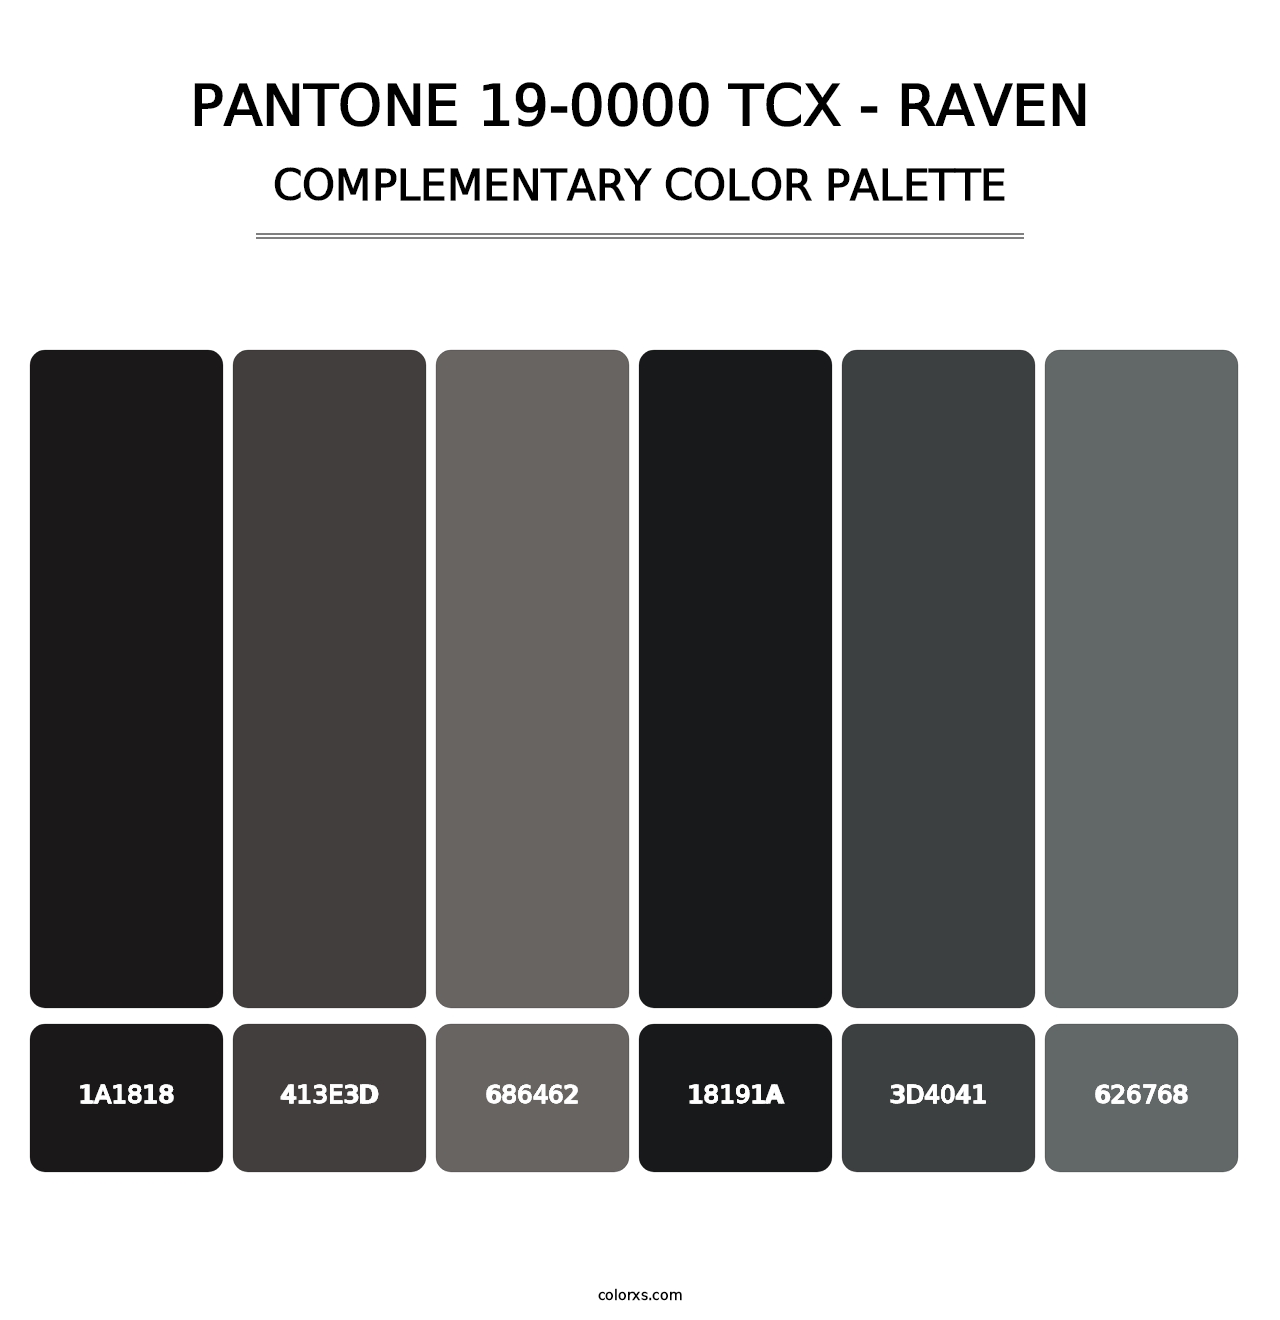 PANTONE 19-0000 TCX - Raven - Complementary Color Palette